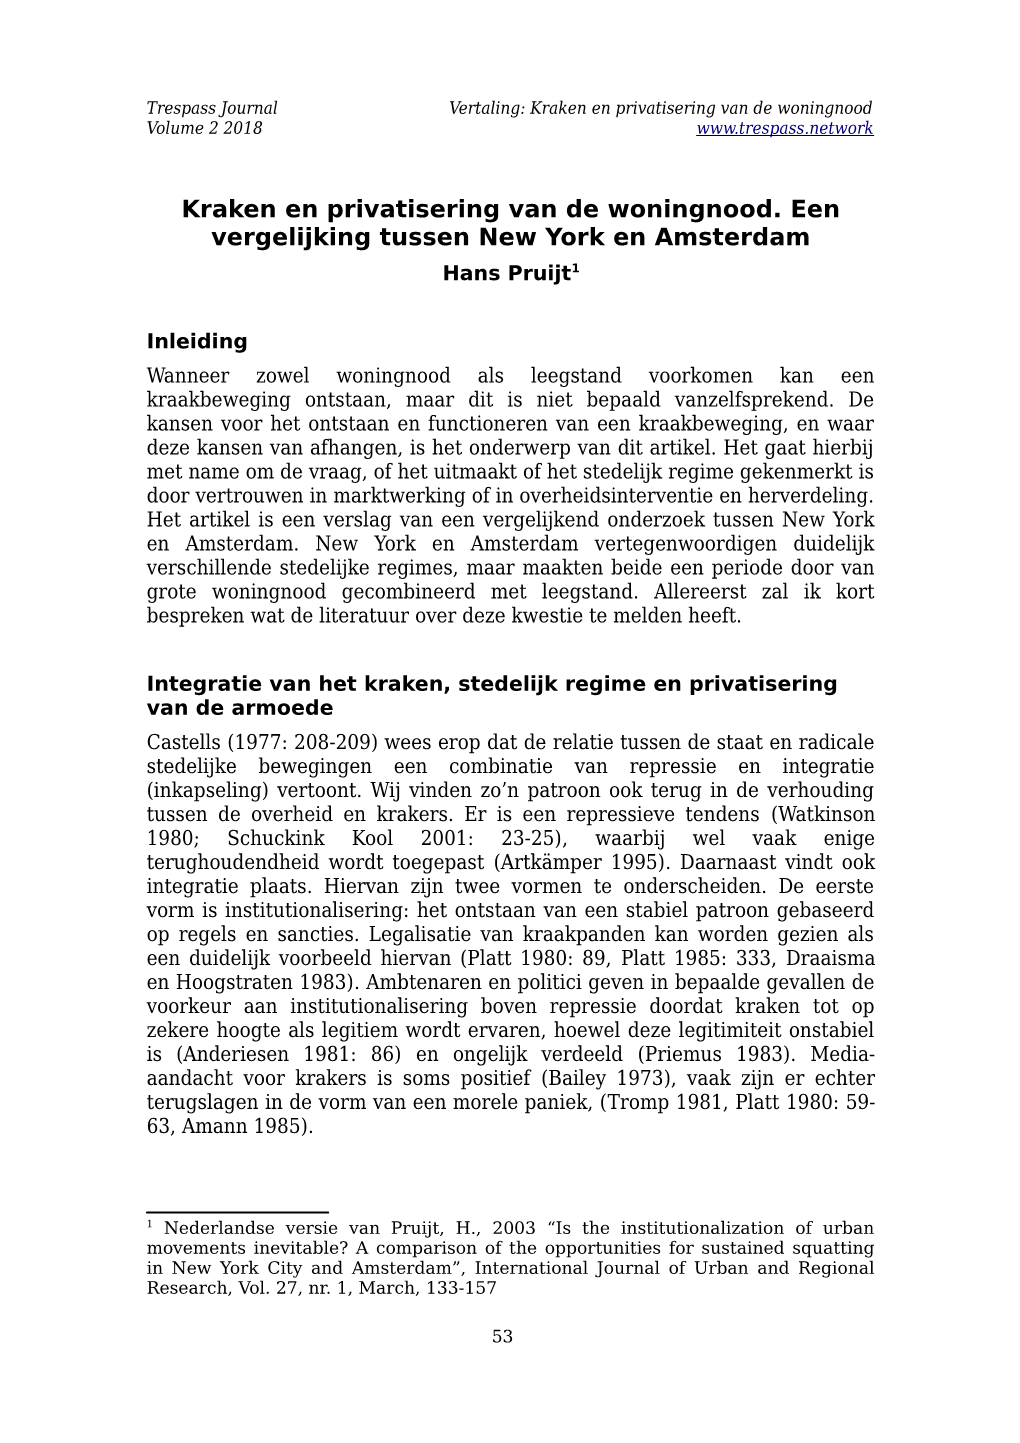 Kraken En Privatisering Van De Woningnood. Een Vergelijking Tussen New York En Amsterdam Hans Pruijt1